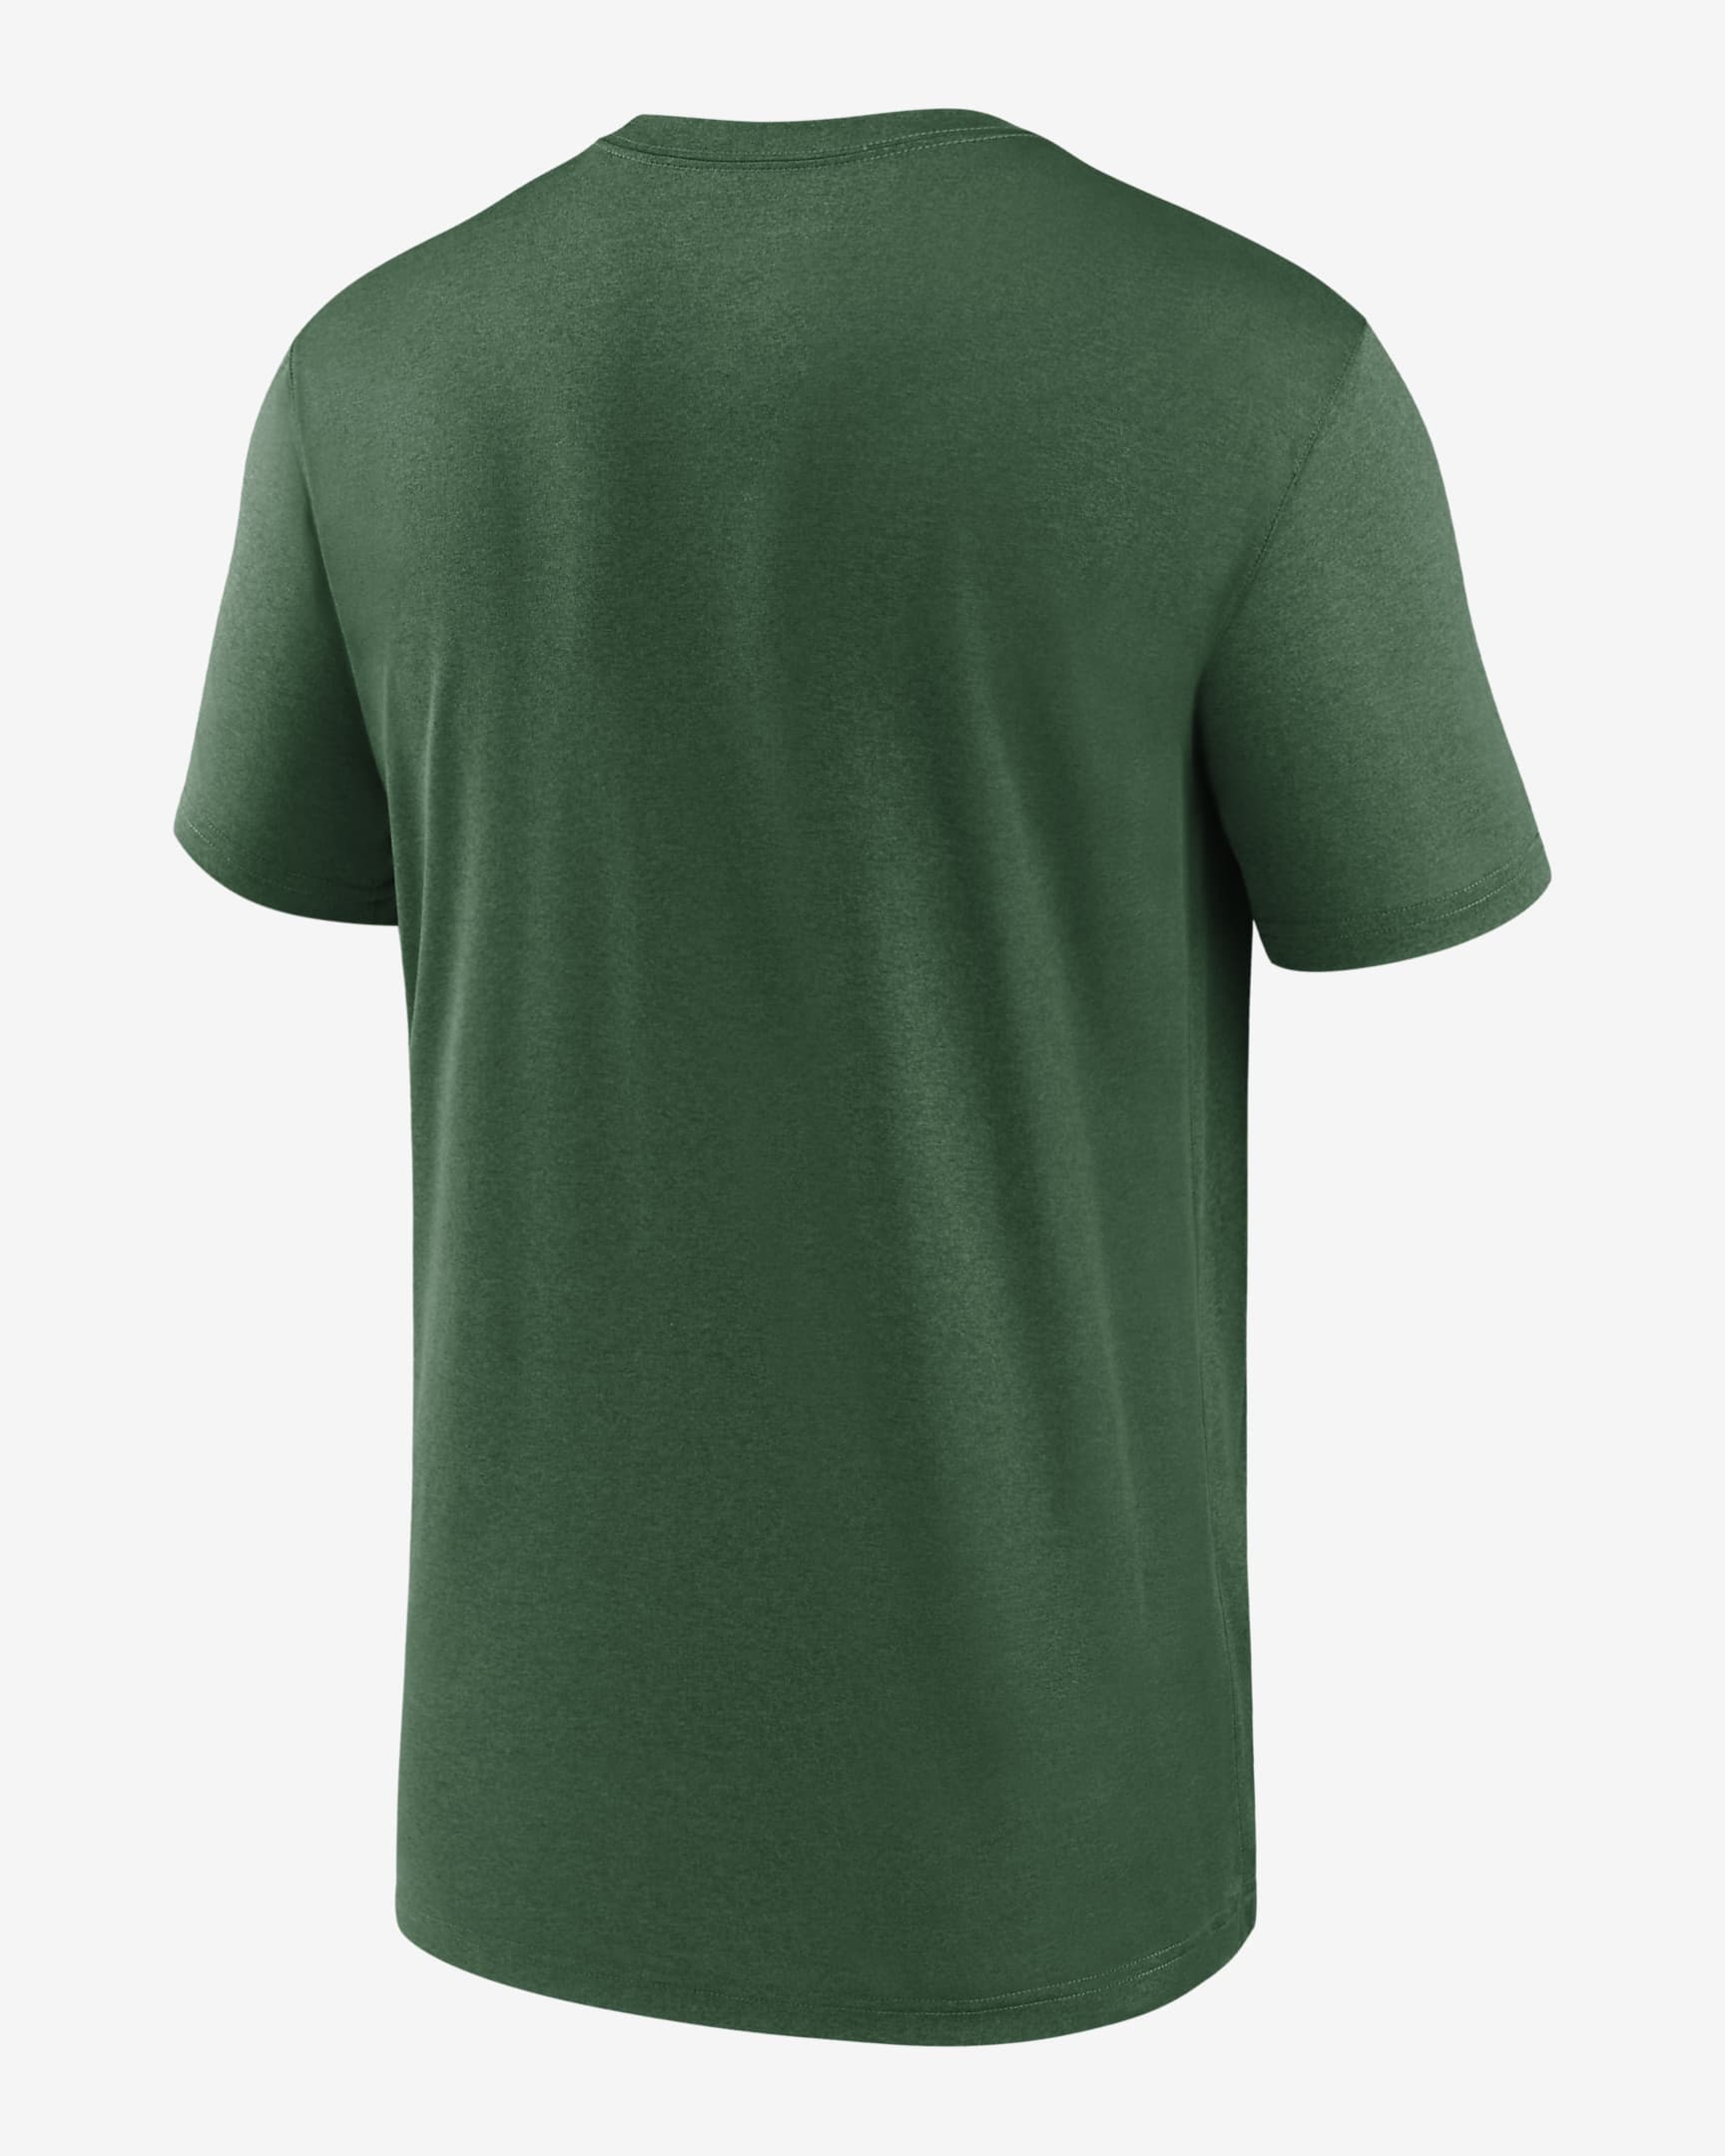 Nike Dri-FIT Logo Legend (NFL New York Jets) Men's T-Shirt. Nike.com